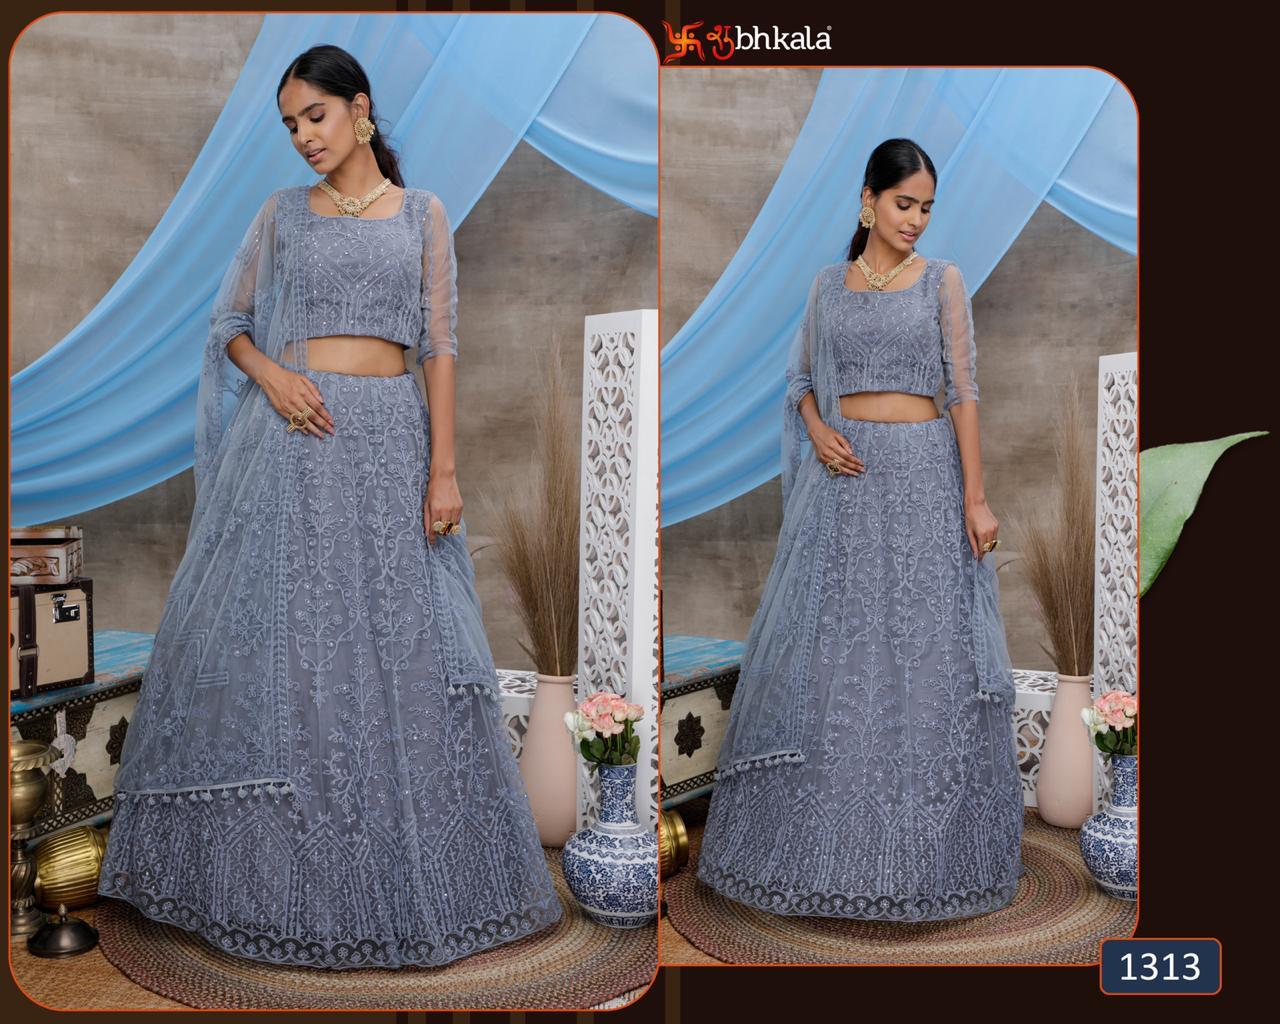 shubhkala bridesmaid vol 6 regal look lehenga catalog